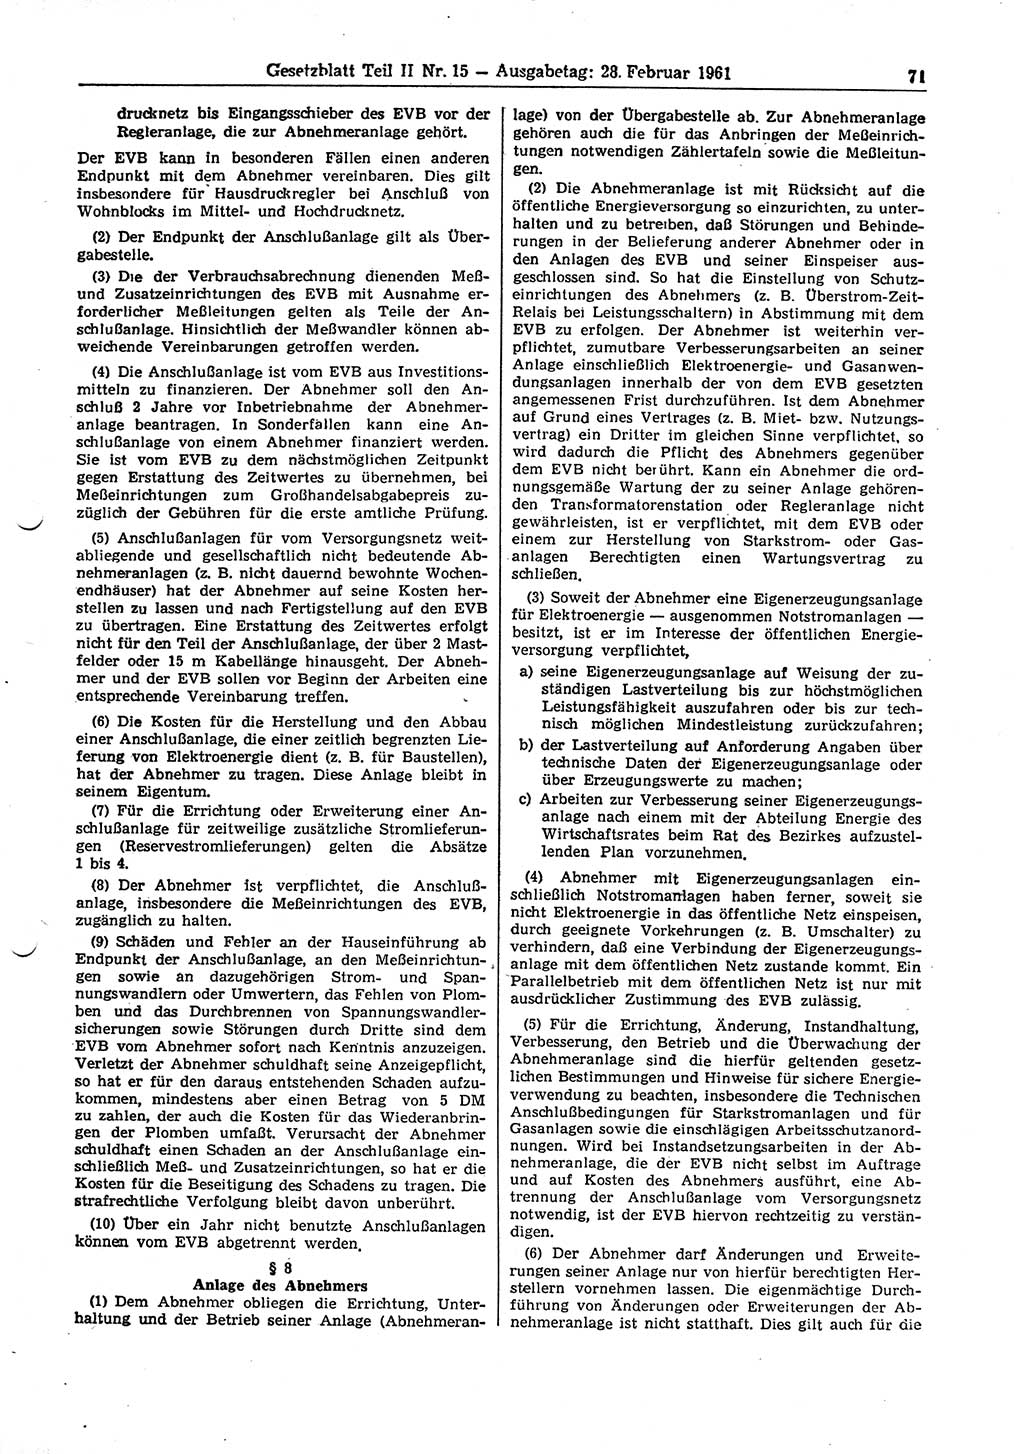 Gesetzblatt (GBl.) der Deutschen Demokratischen Republik (DDR) Teil ⅠⅠ 1961, Seite 71 (GBl. DDR ⅠⅠ 1961, S. 71)